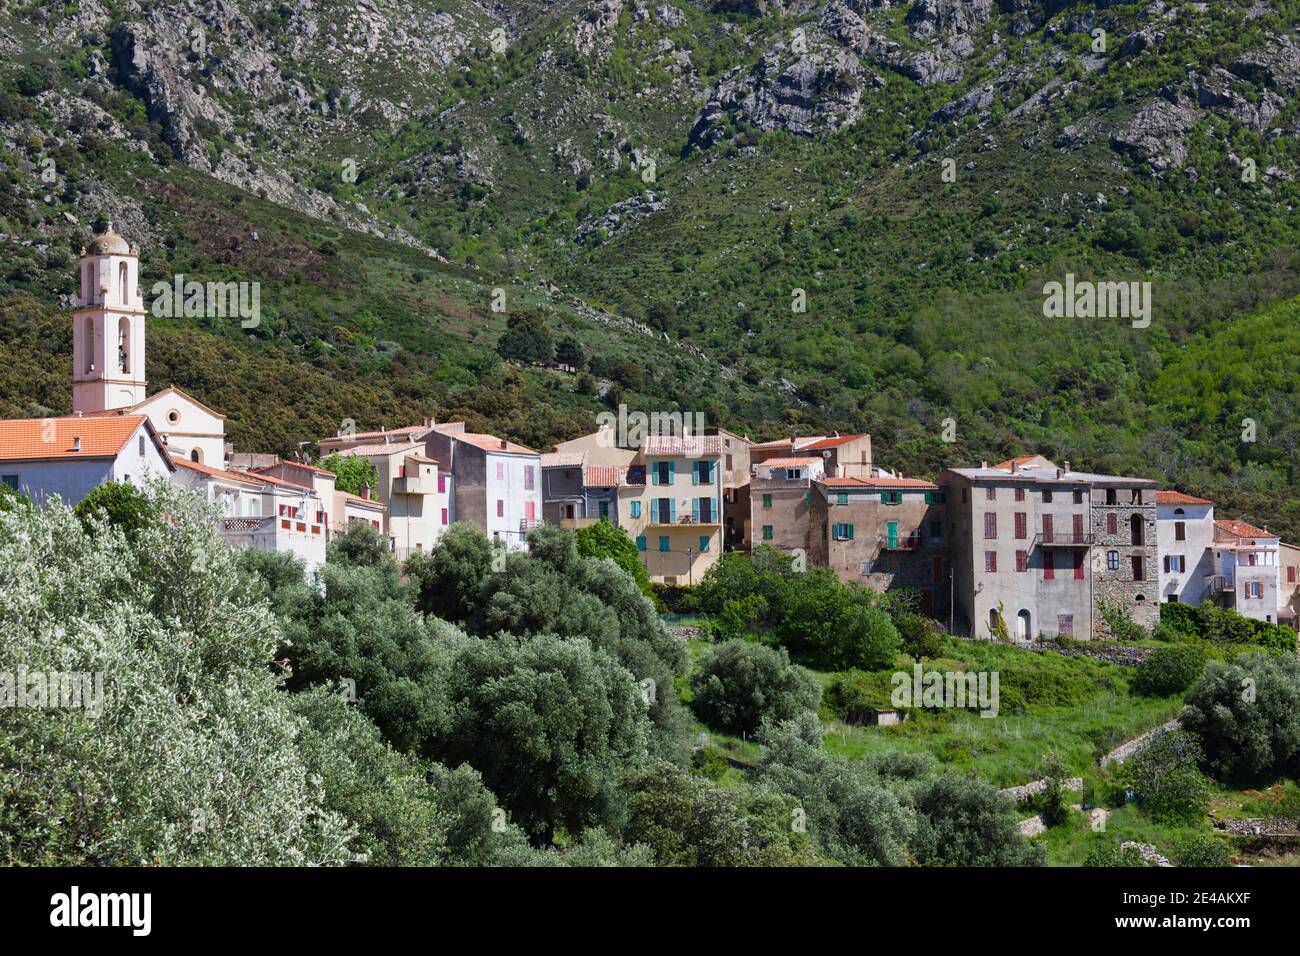 Bâtiments dans une ville, Zilia, la Balagne, haute-Corse, Corse, France Banque D'Images